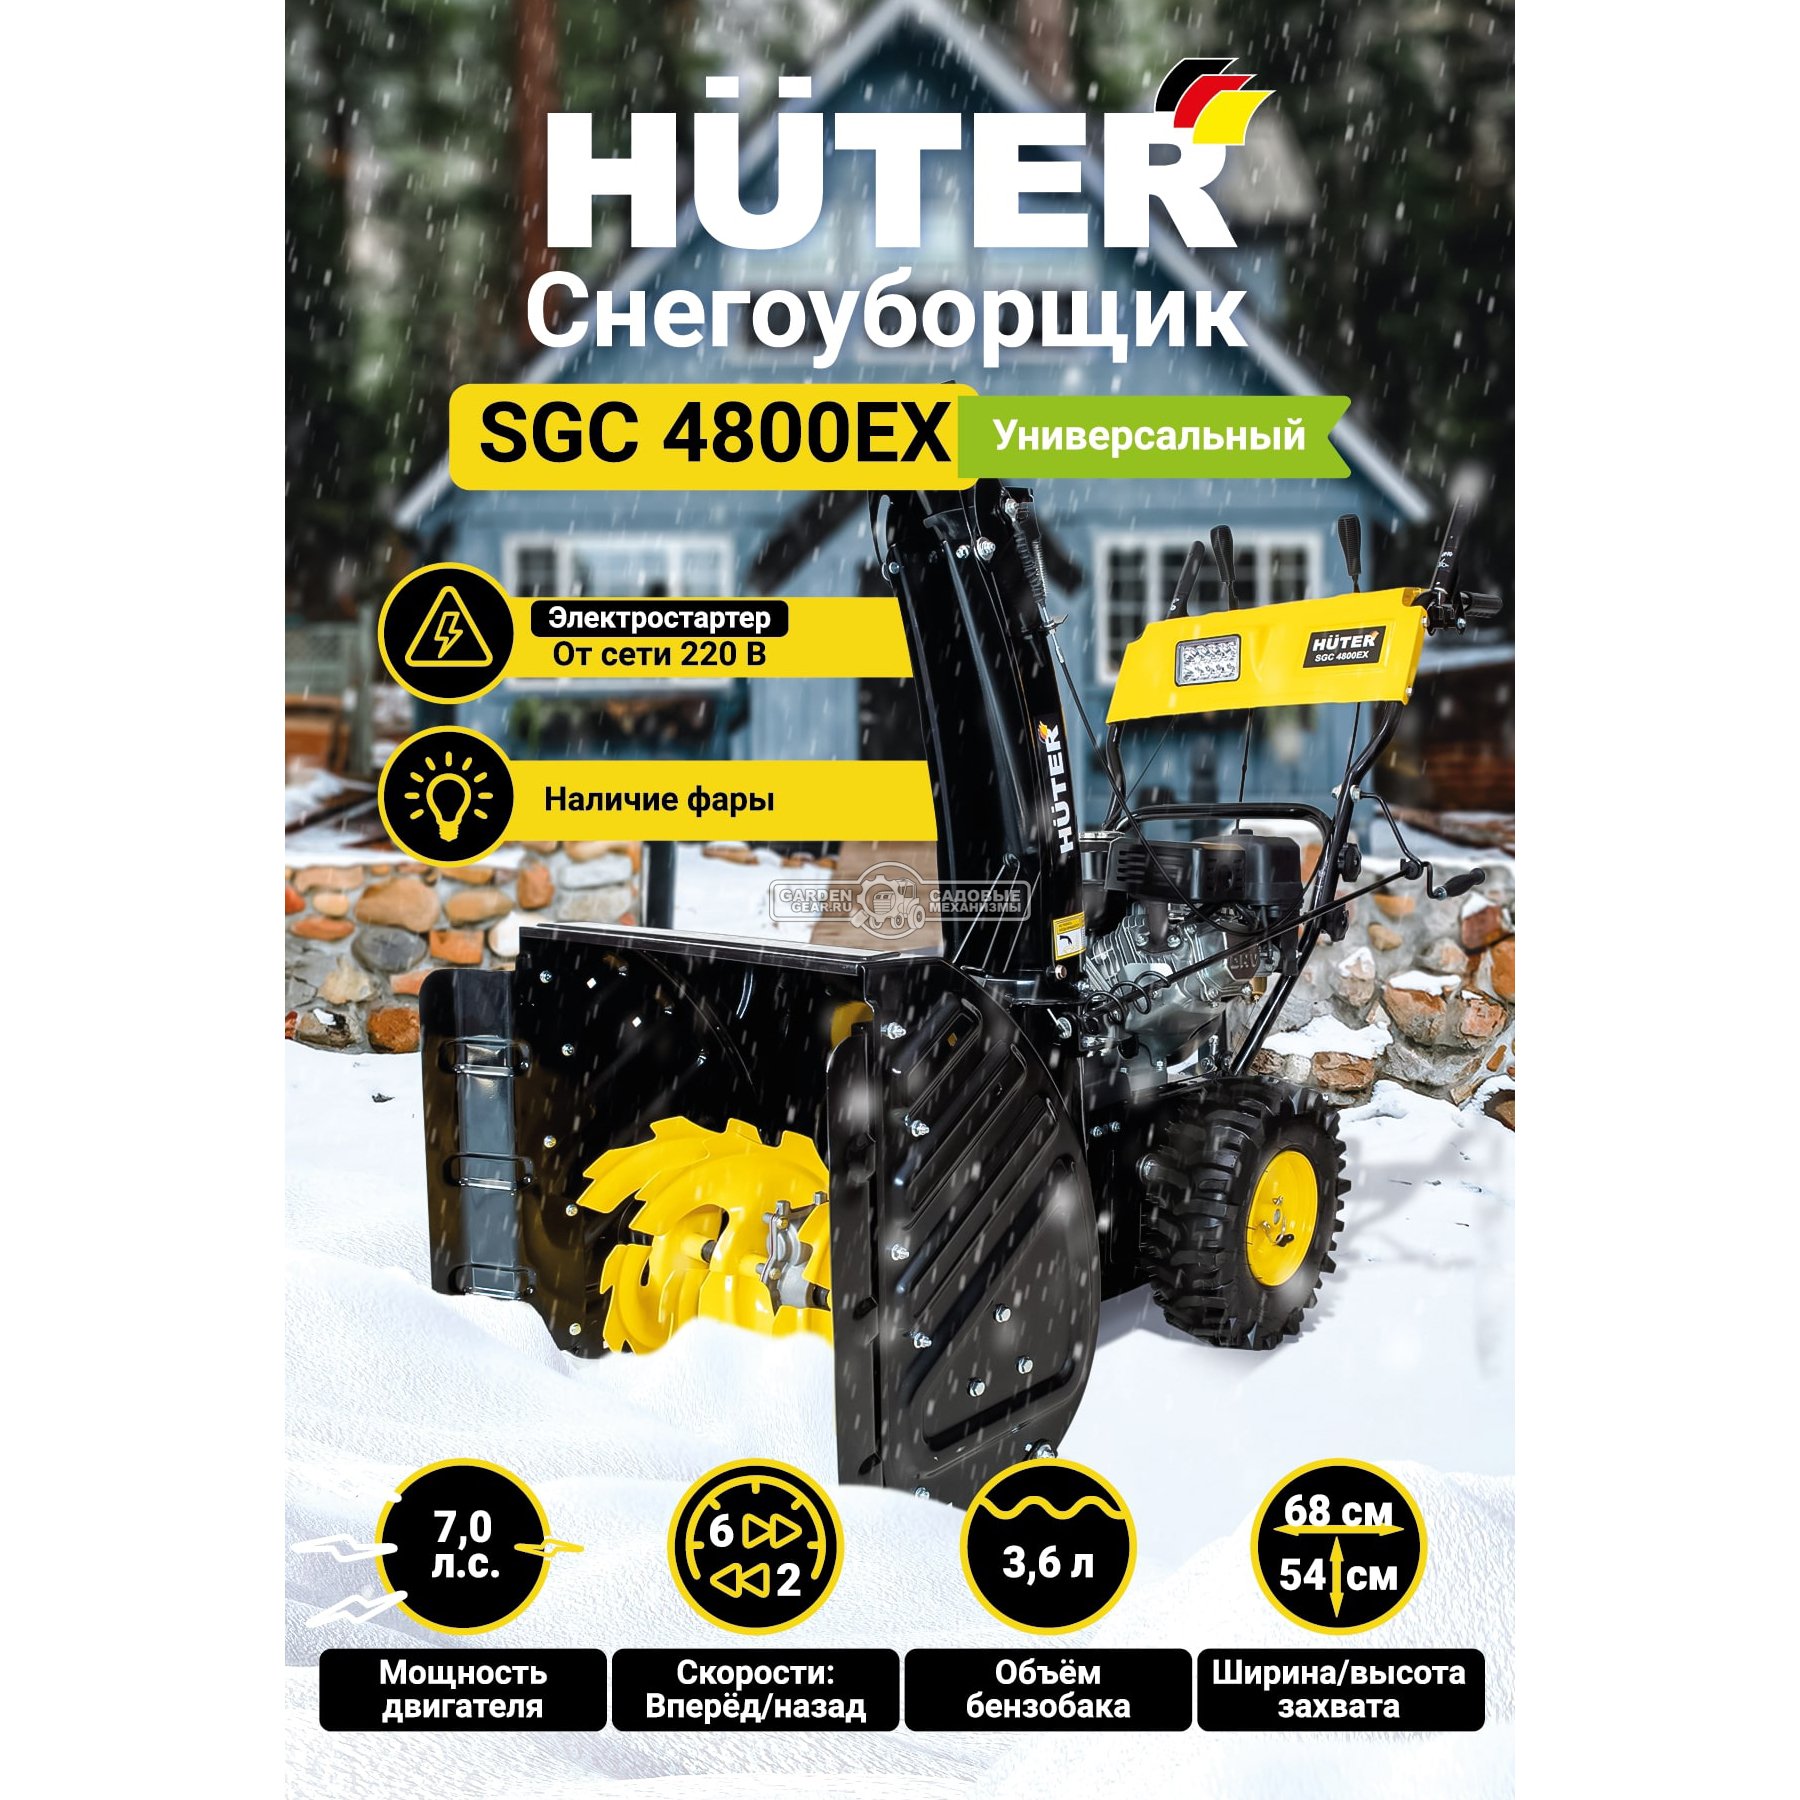 Снегоуборщик Huter SGC 4800EX (PRC, 68 см, Huter, 7.0 л.с., эл/стартер 220В, фара, скорости 6/2, 75 кг.)